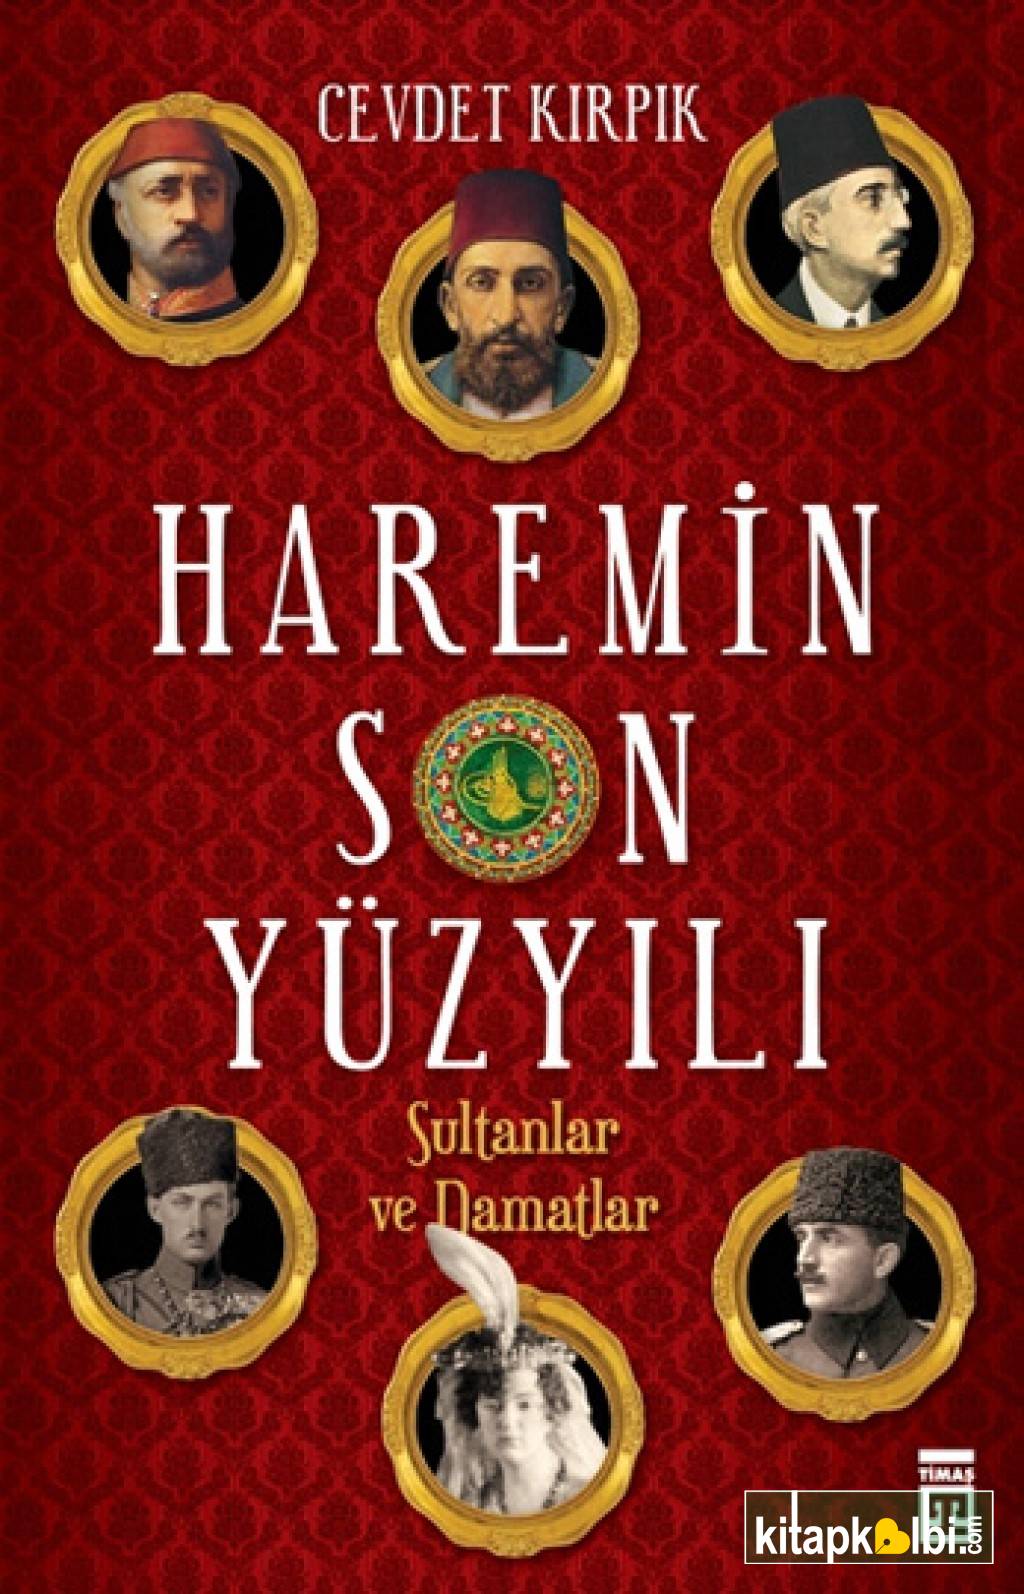 Haremin Son Yüzyılı Sultanlar ve Damatlar